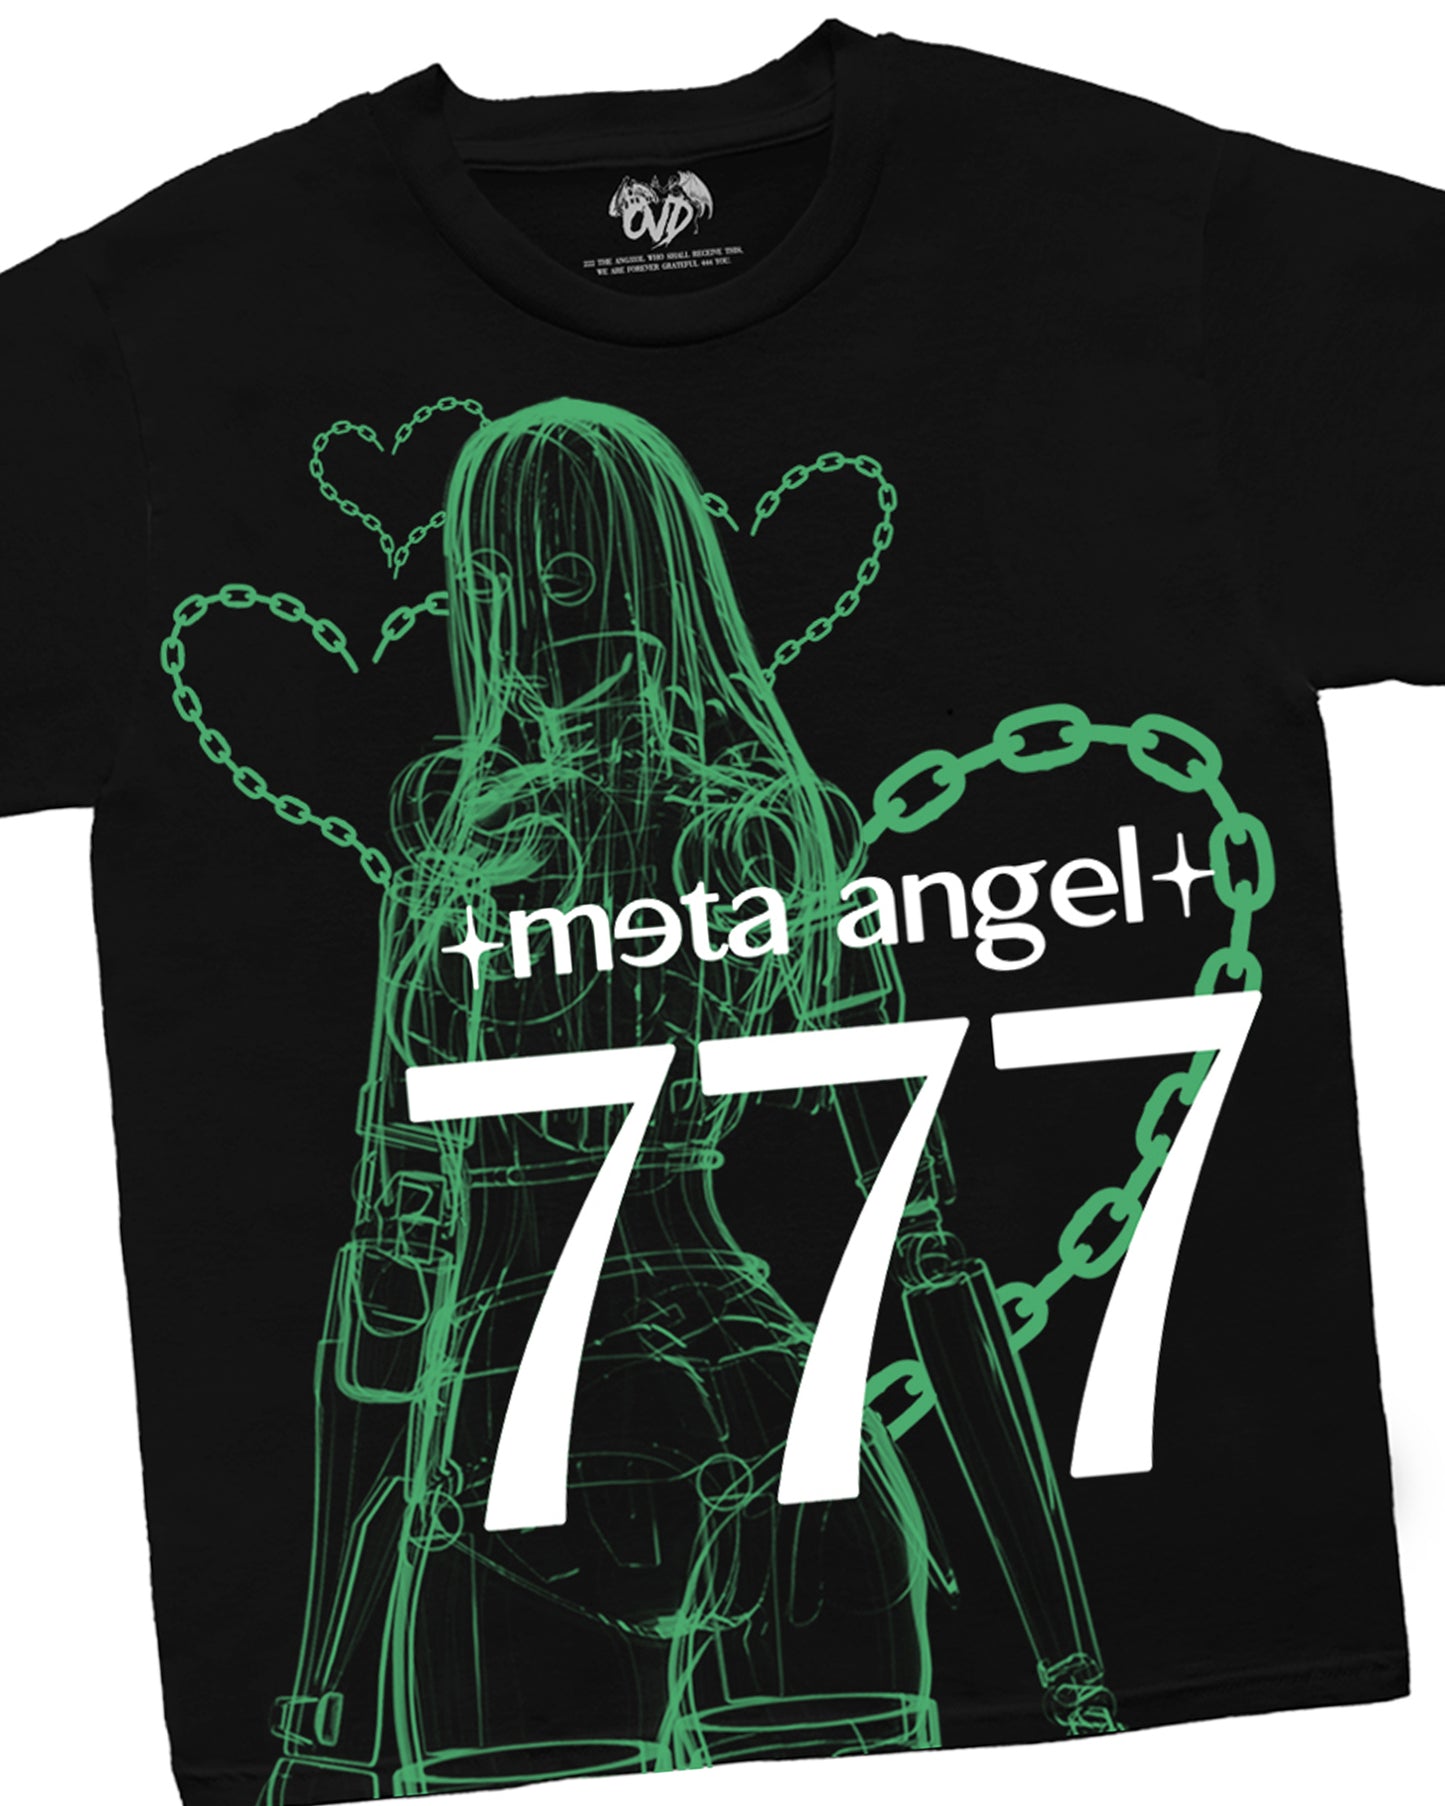 "META ANGEL 777 - CYBERGREEN"